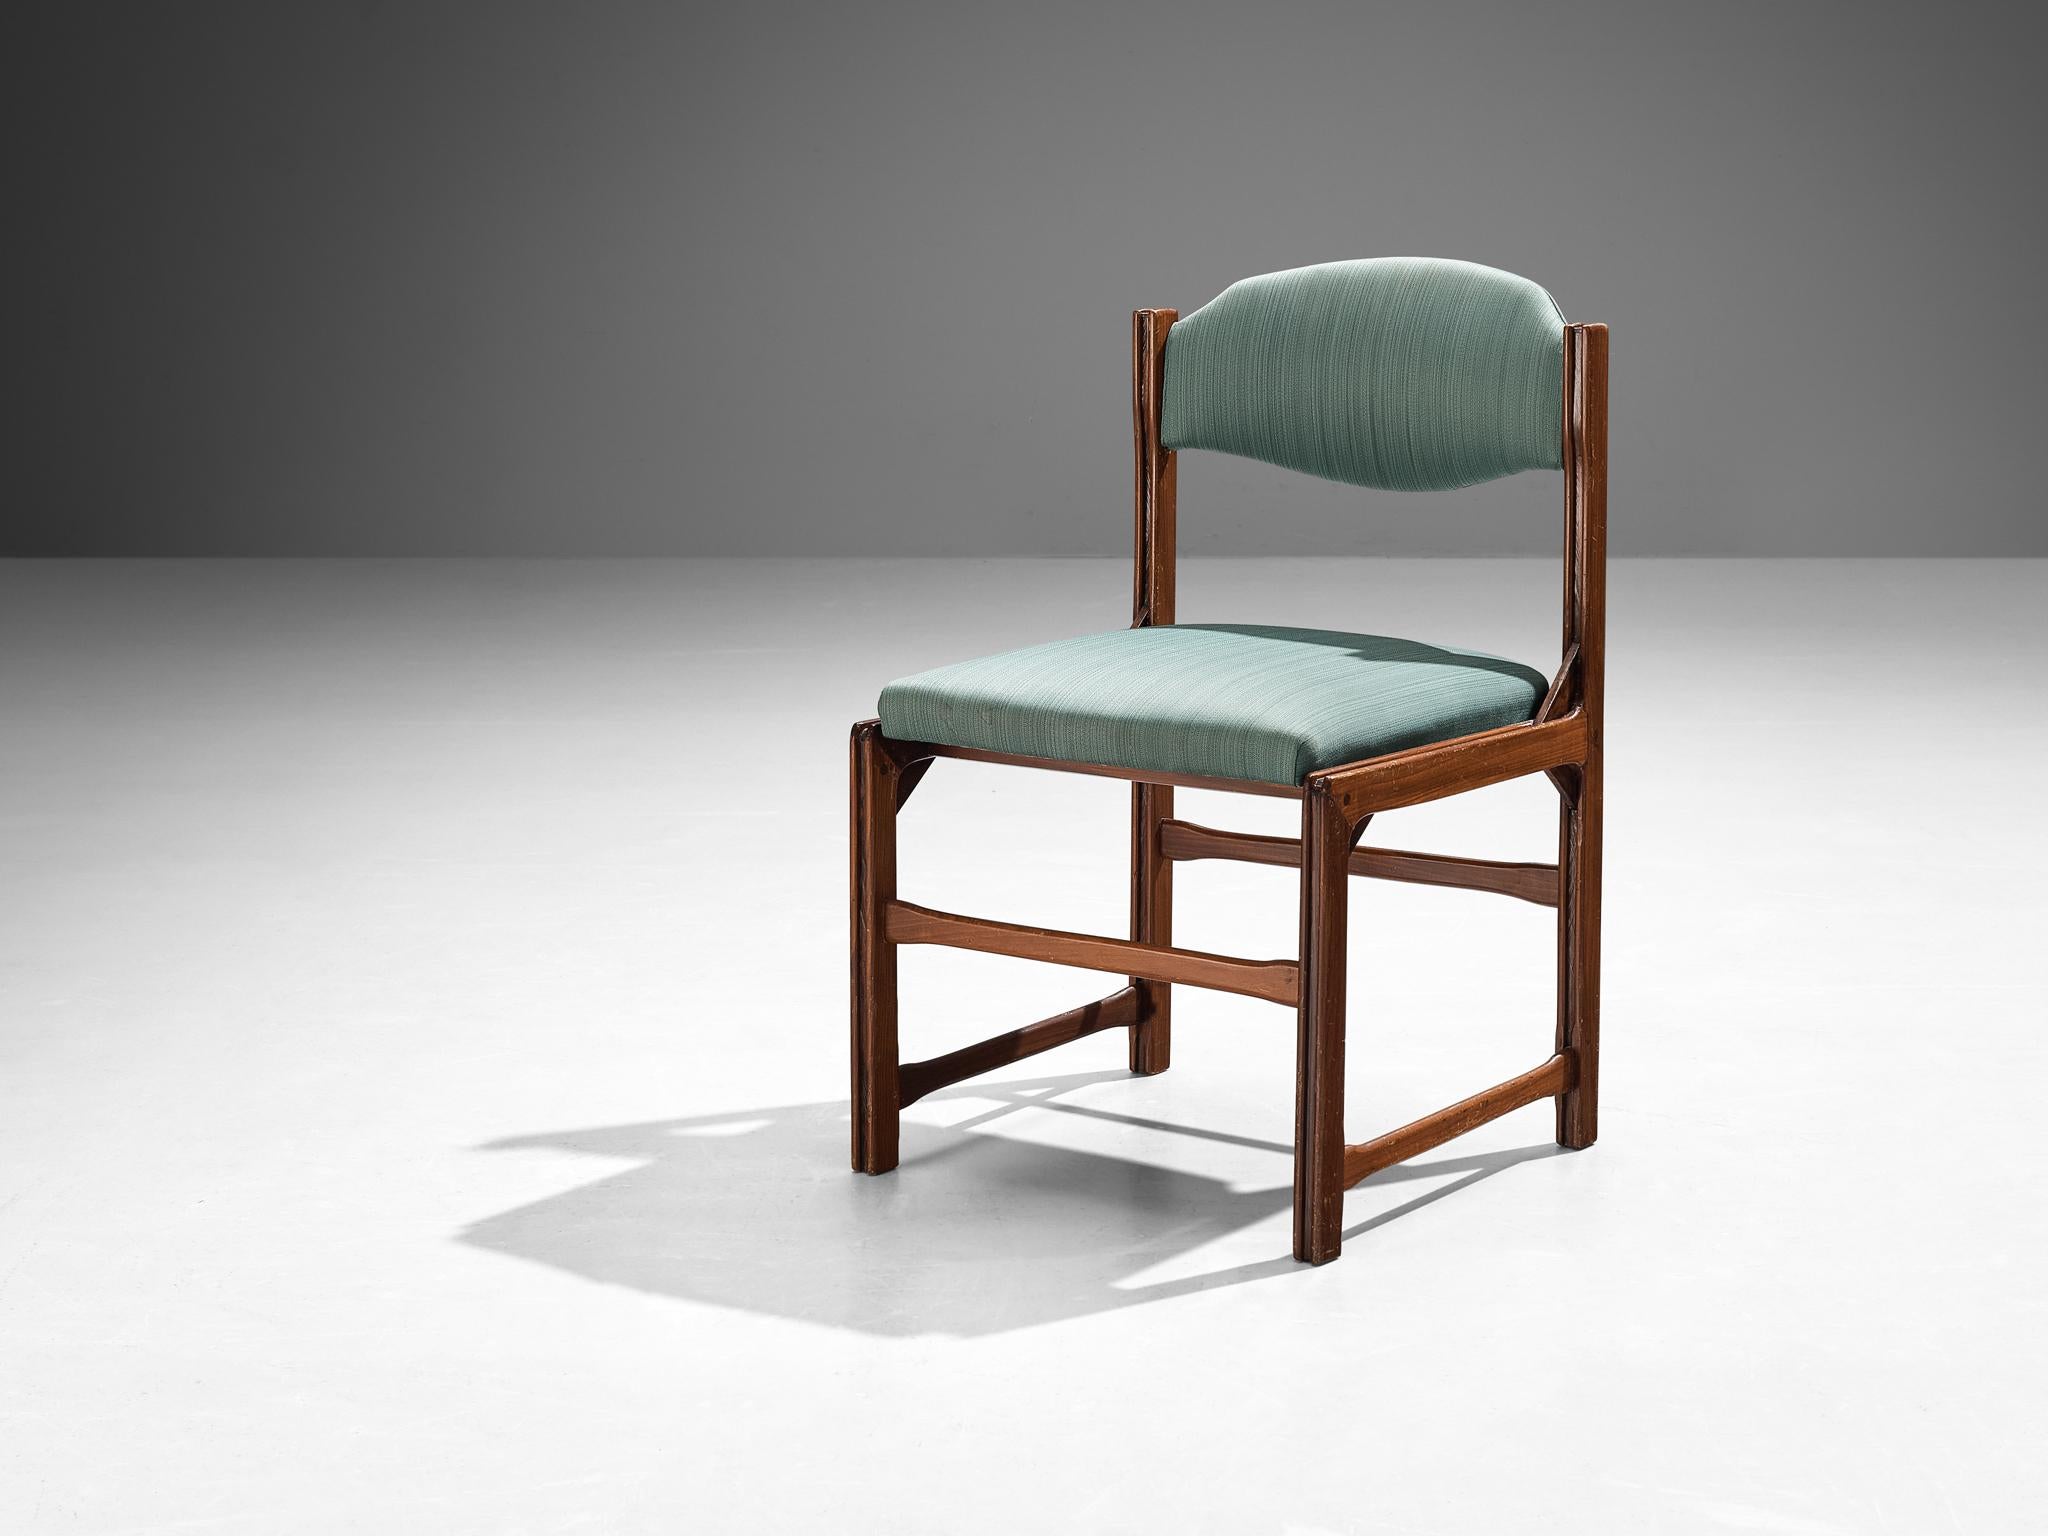 La Permanente Mobili Cantù, chaise, cerisier, tissu, Italie, années 1960

Cette chaise, produite par La Permanente Mobili Cantu dans les années 60, utilise le vocabulaire esthétique italien et le travail du bois typique. Le cadre en cerisier